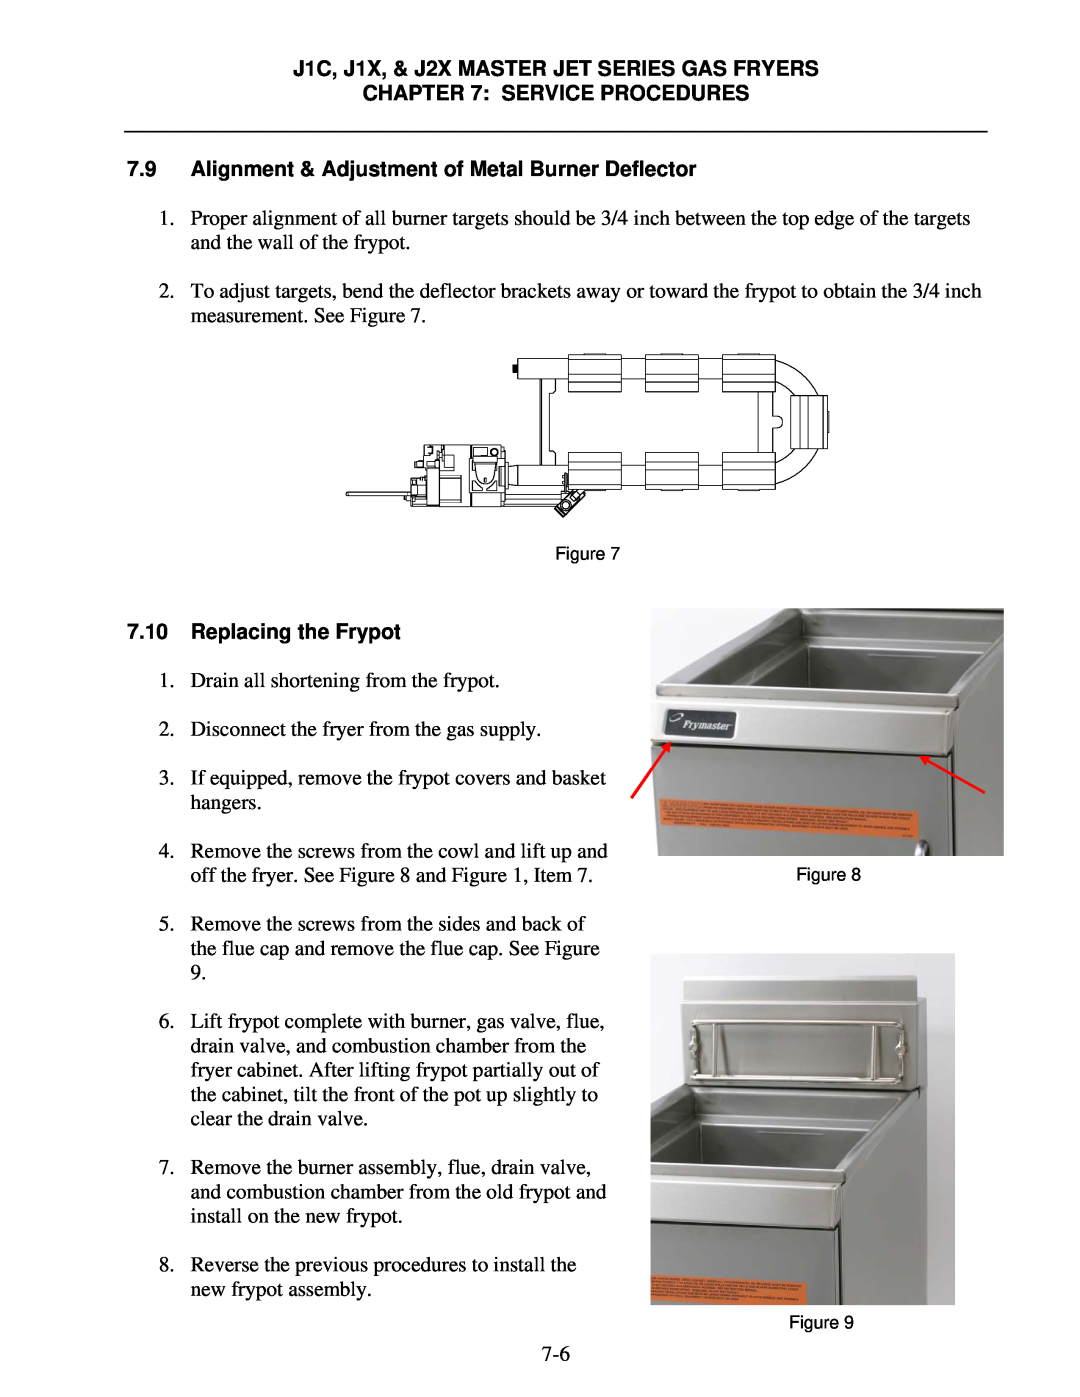 Frymaster J1X, J2X manual Alignment & Adjustment of Metal Burner Deflector, Replacing the Frypot, Service Procedures 